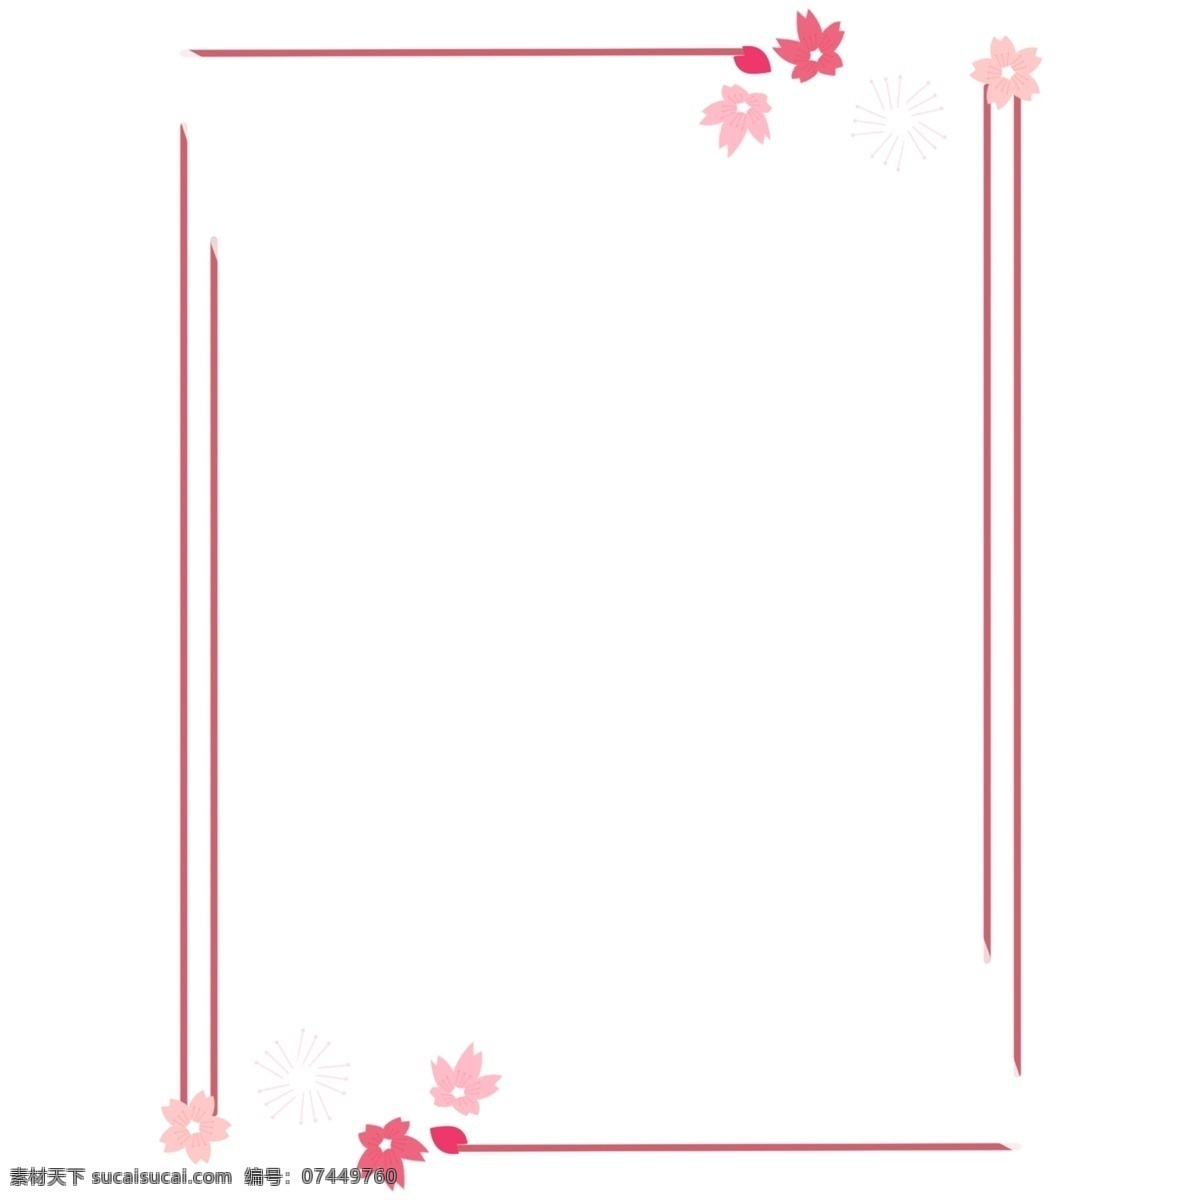 2019 年 实用 樱花 装饰 边框 格式 2019年 樱花边框 樱花装饰 实用边框 樱花实用边框 简洁 粉色 红色 边框装饰